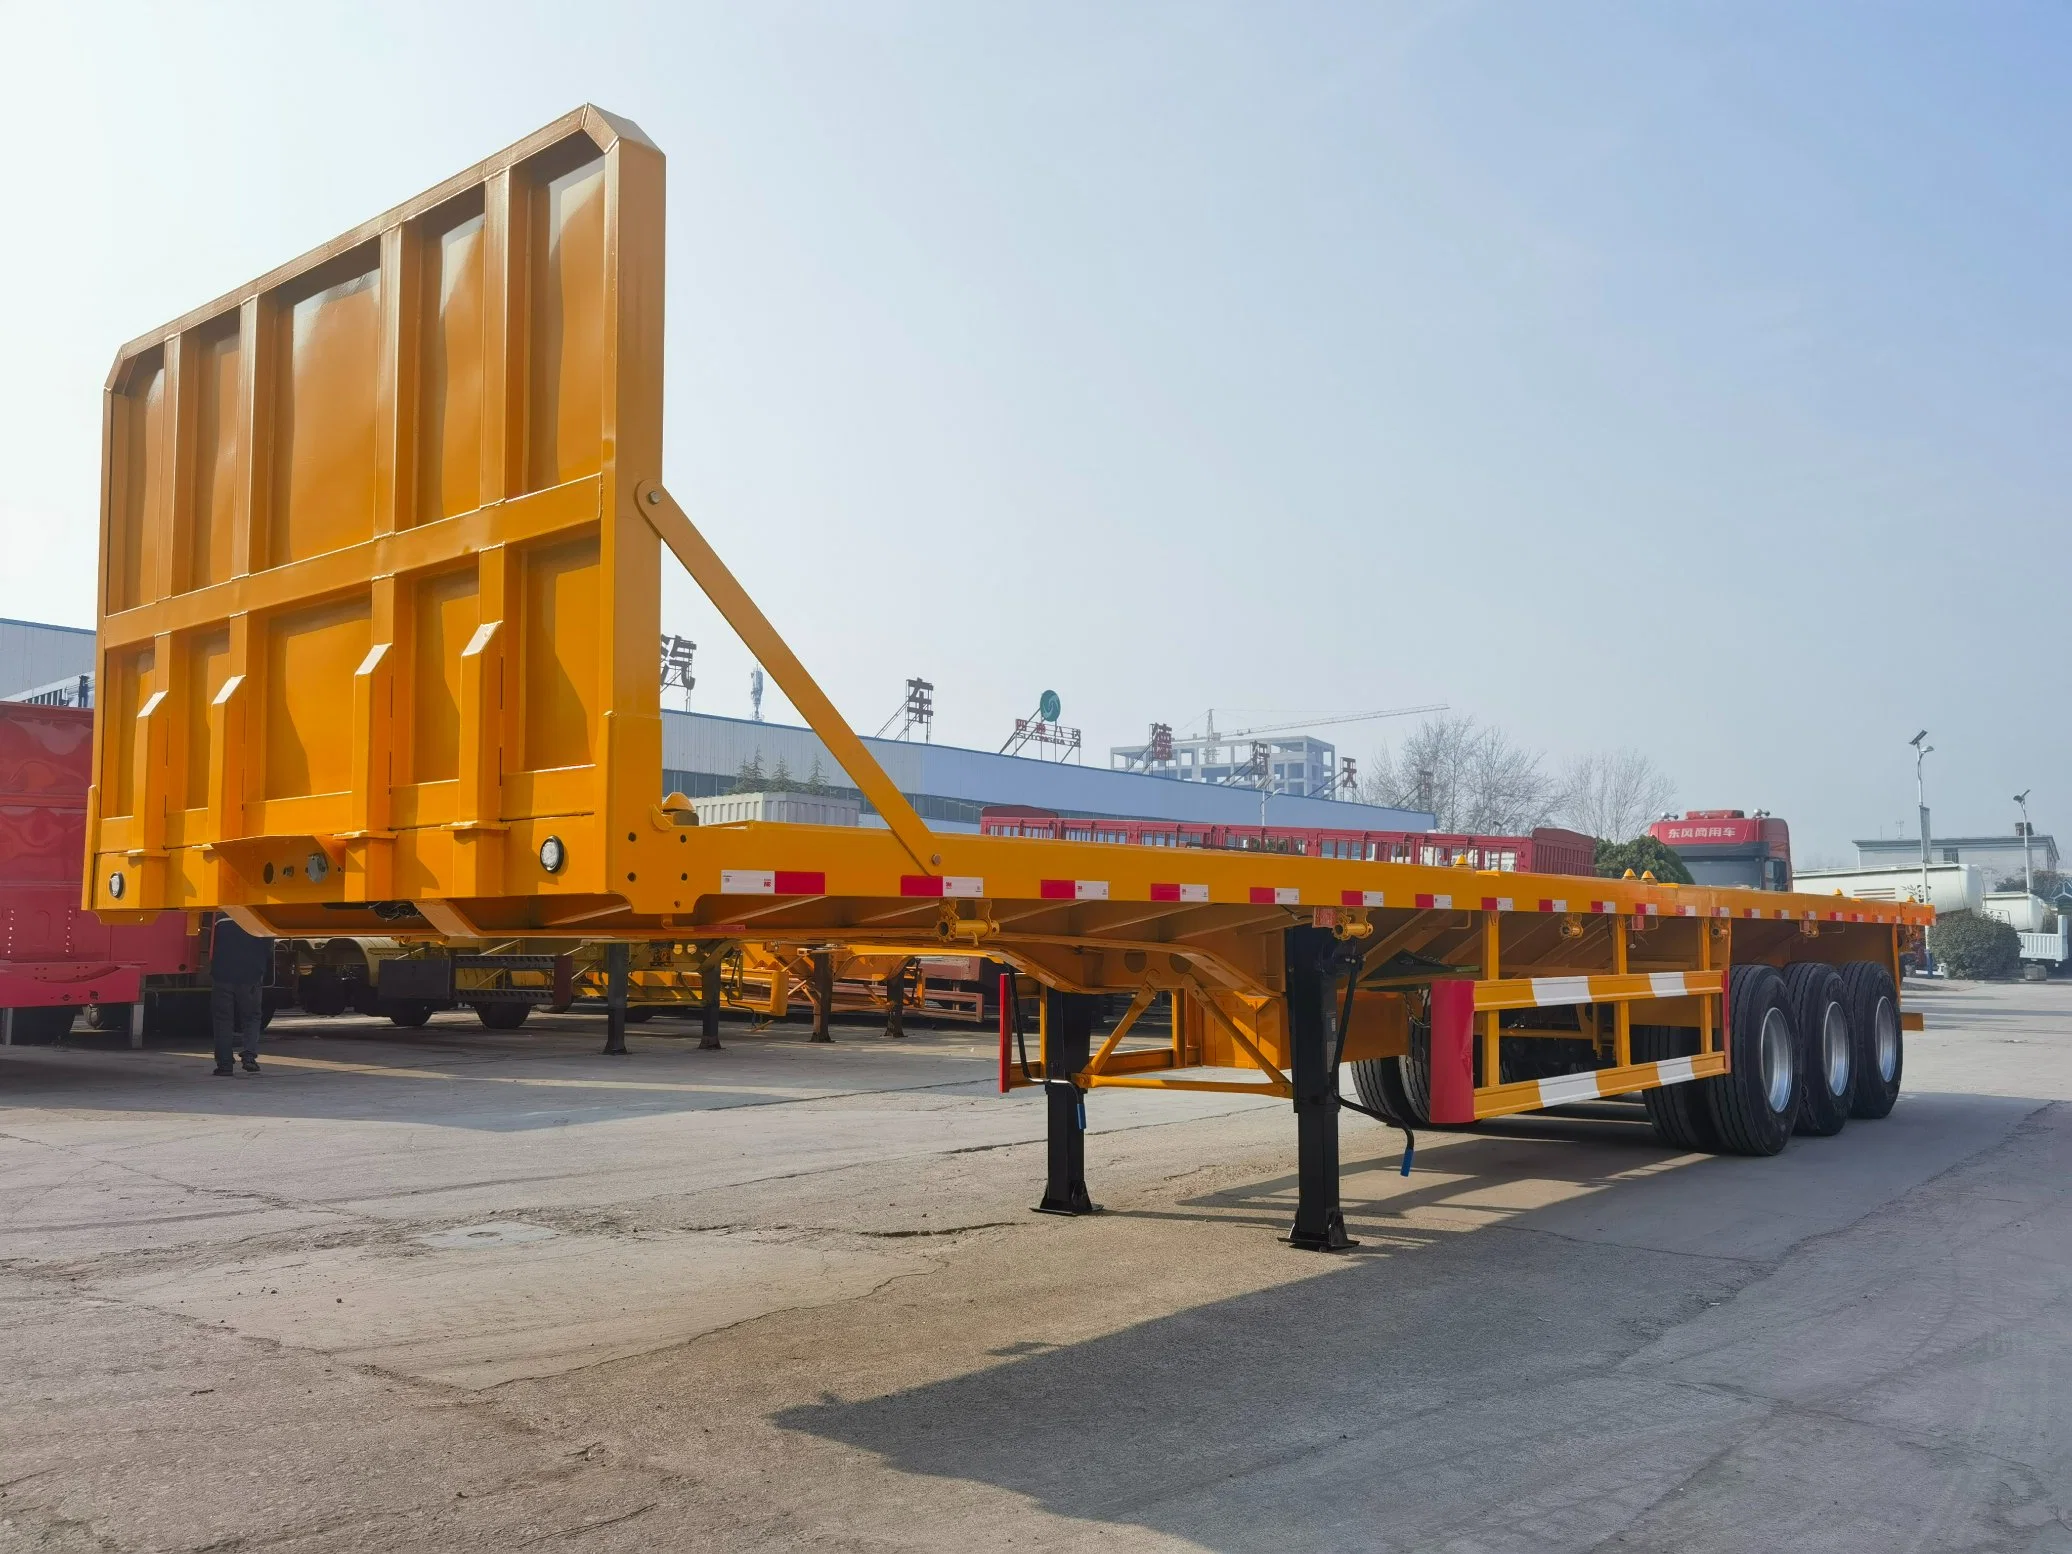 Erweiterbare Flachbett Semi Trialer für Überlänge Cargo Transport